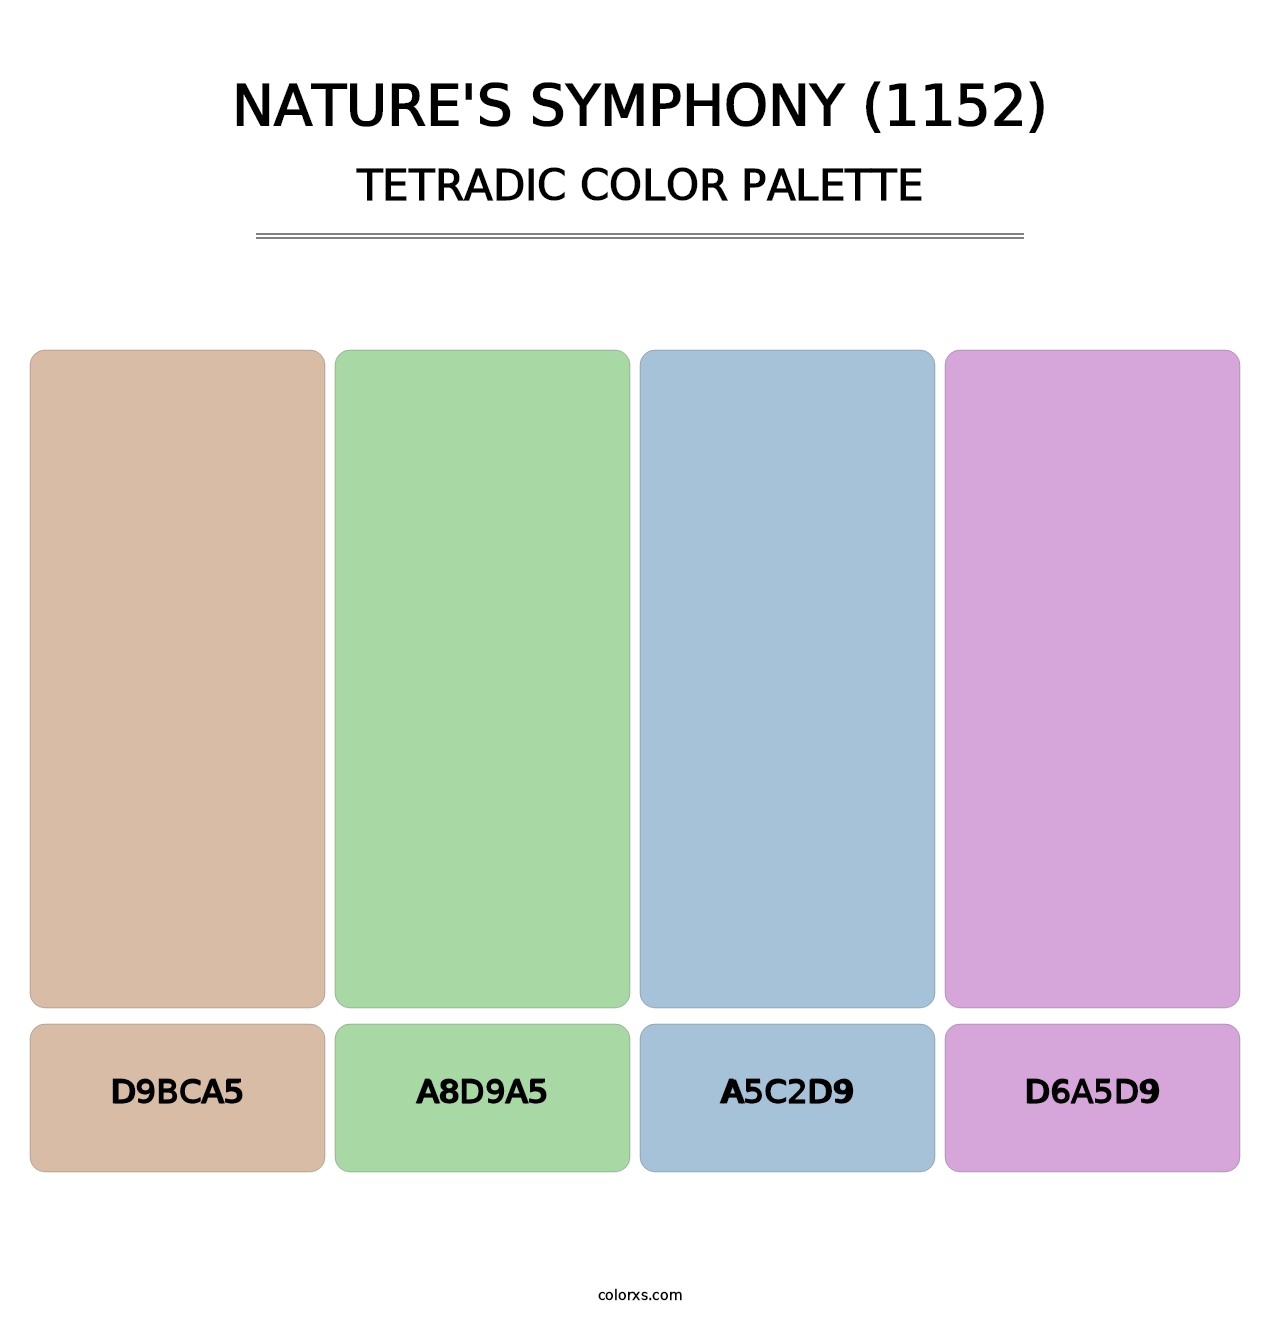 Nature's Symphony (1152) - Tetradic Color Palette